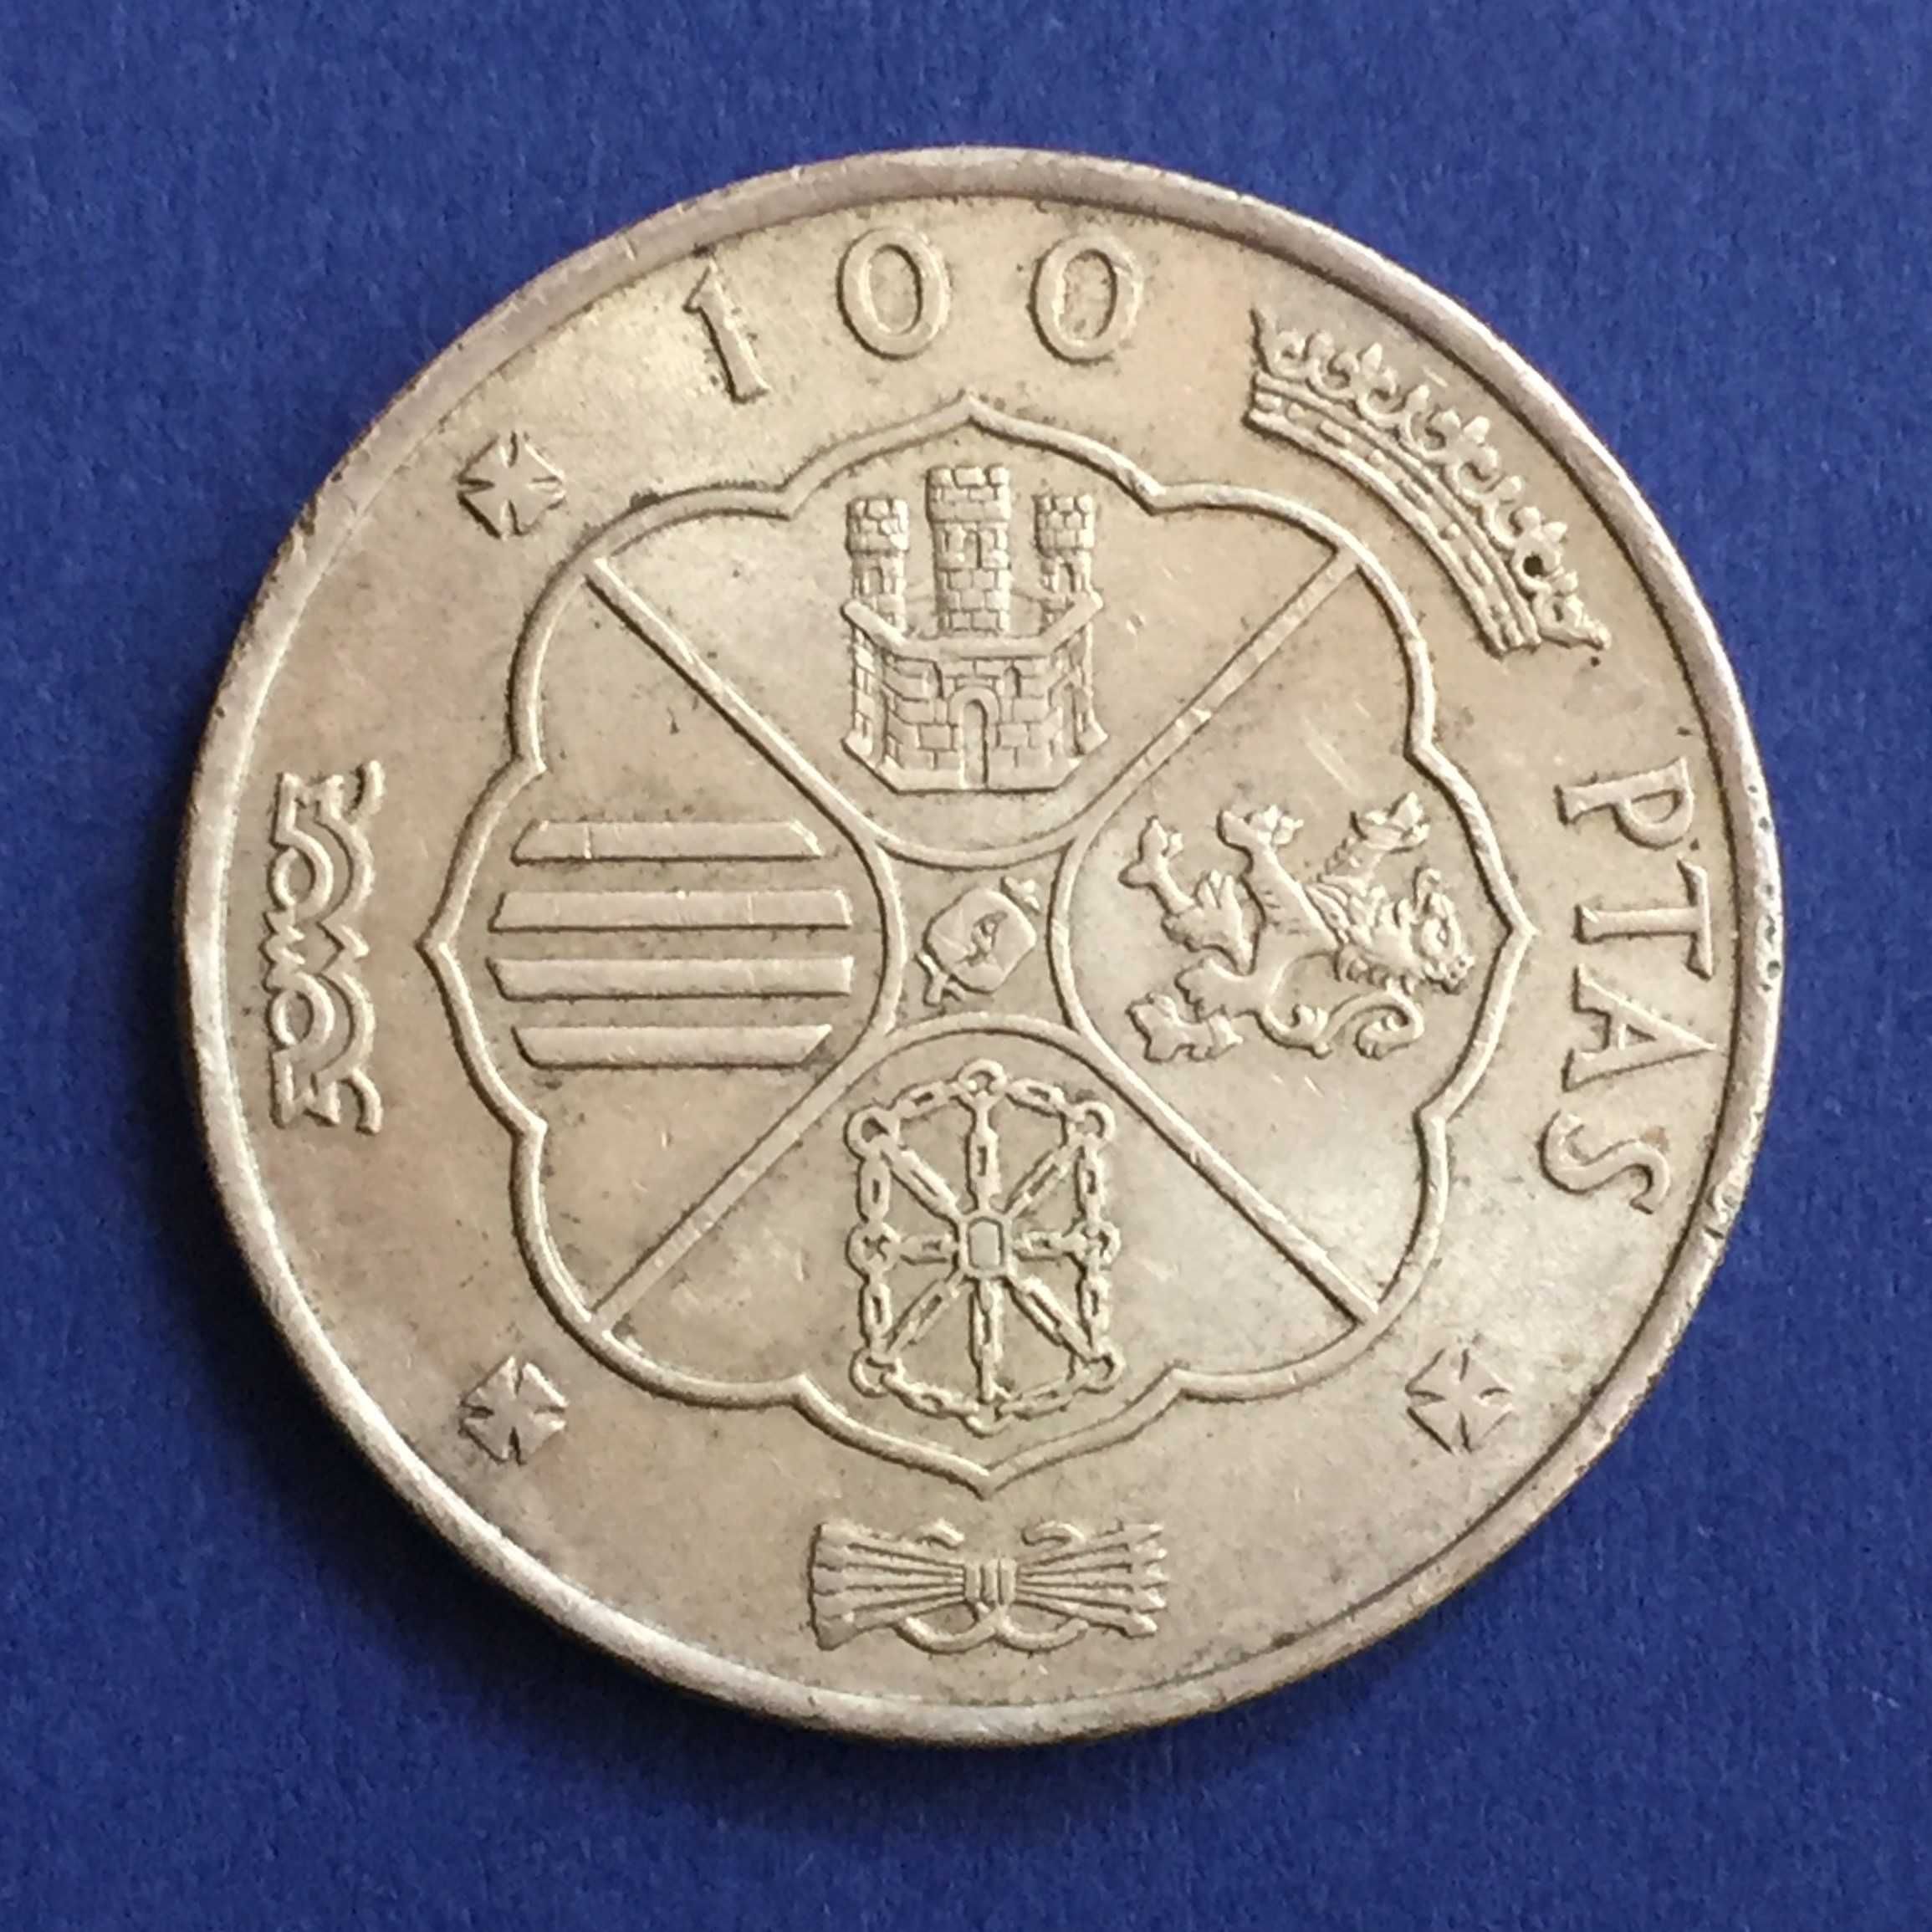 Espanha-moeda 100 pesetas 1966 *68* - prata